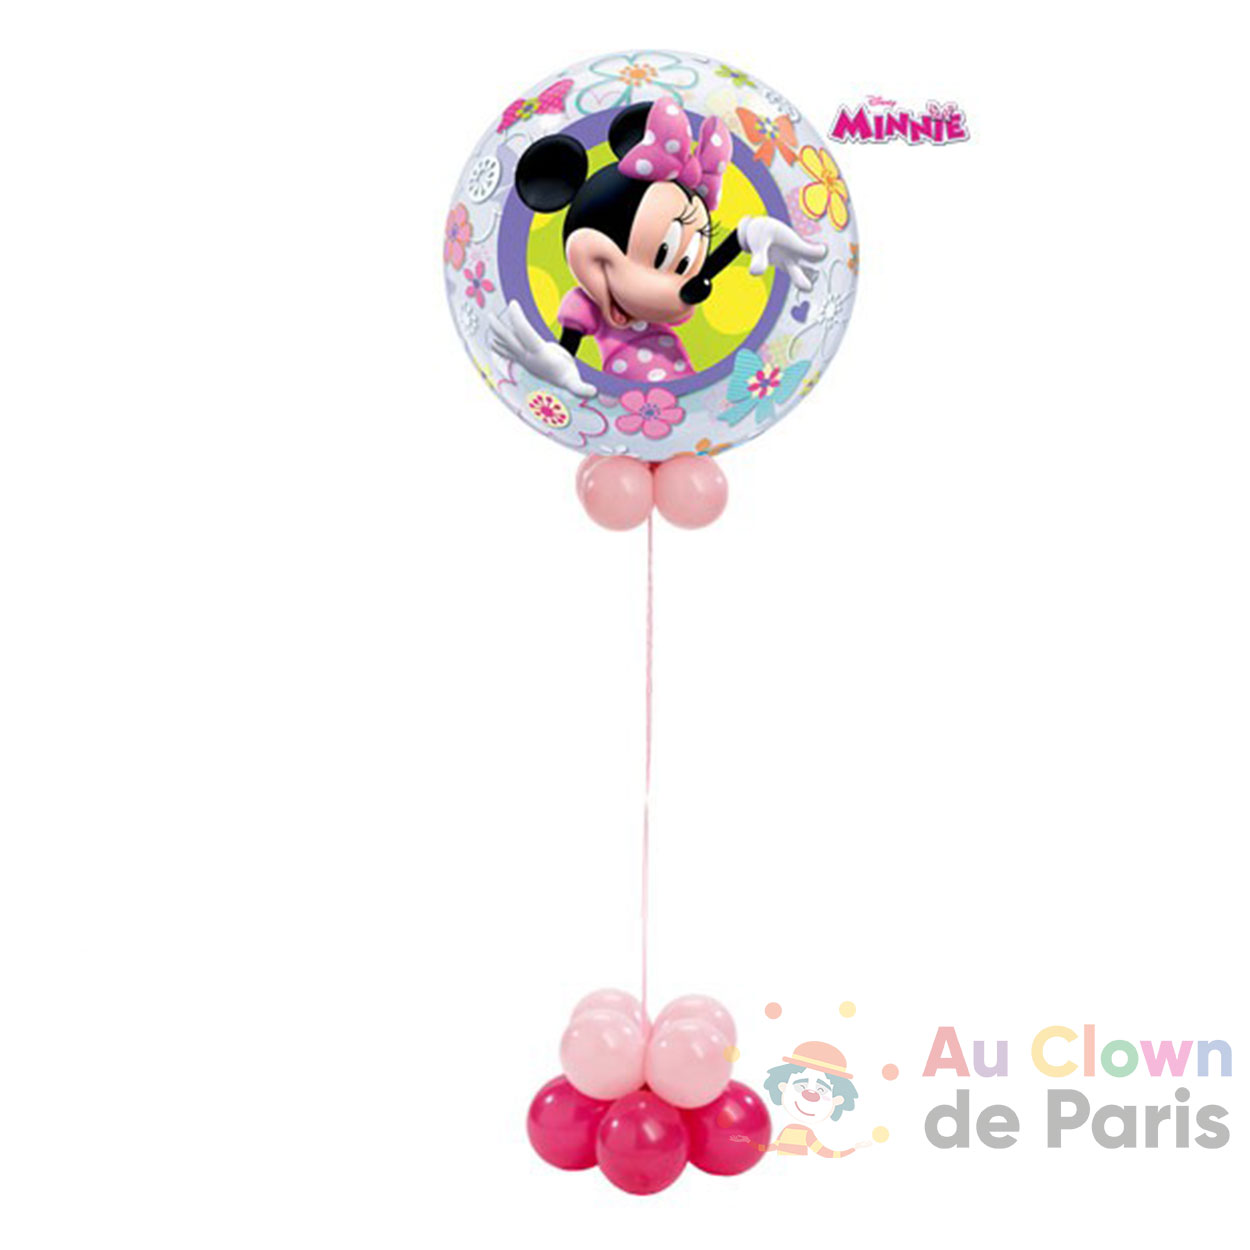 https://au-clown-de-paris.fr/wp-content/uploads/2021/01/ballon-helium-minnie.jpg